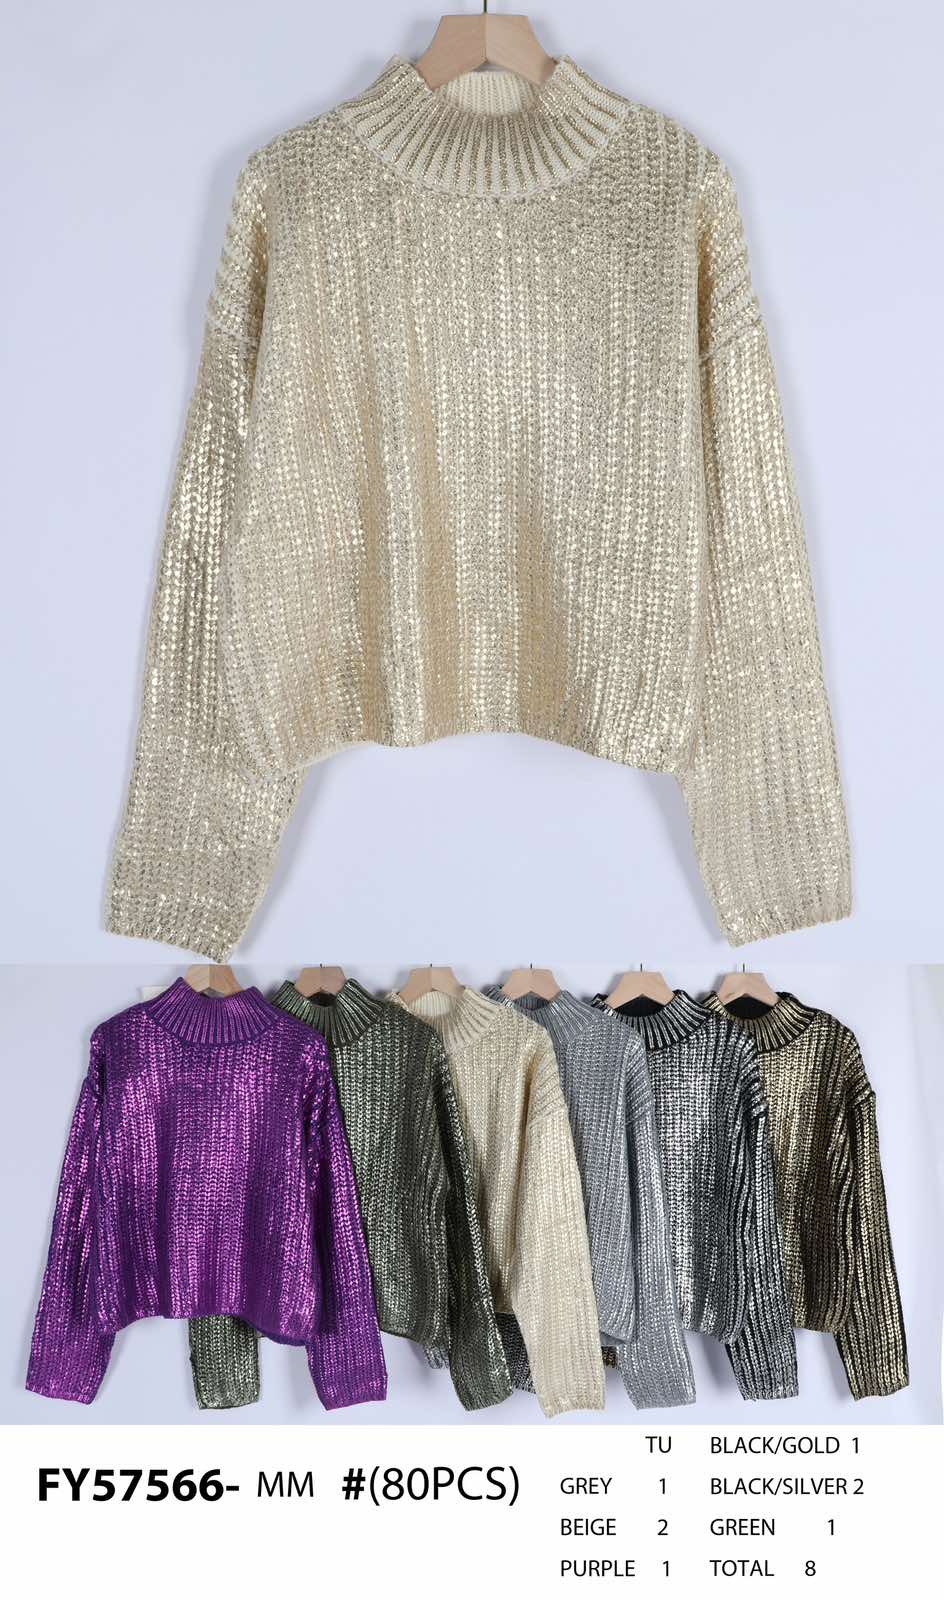 Swetry damskie (Francja produkt) Roz Standard .Mix kolor, Paszka 8 szt